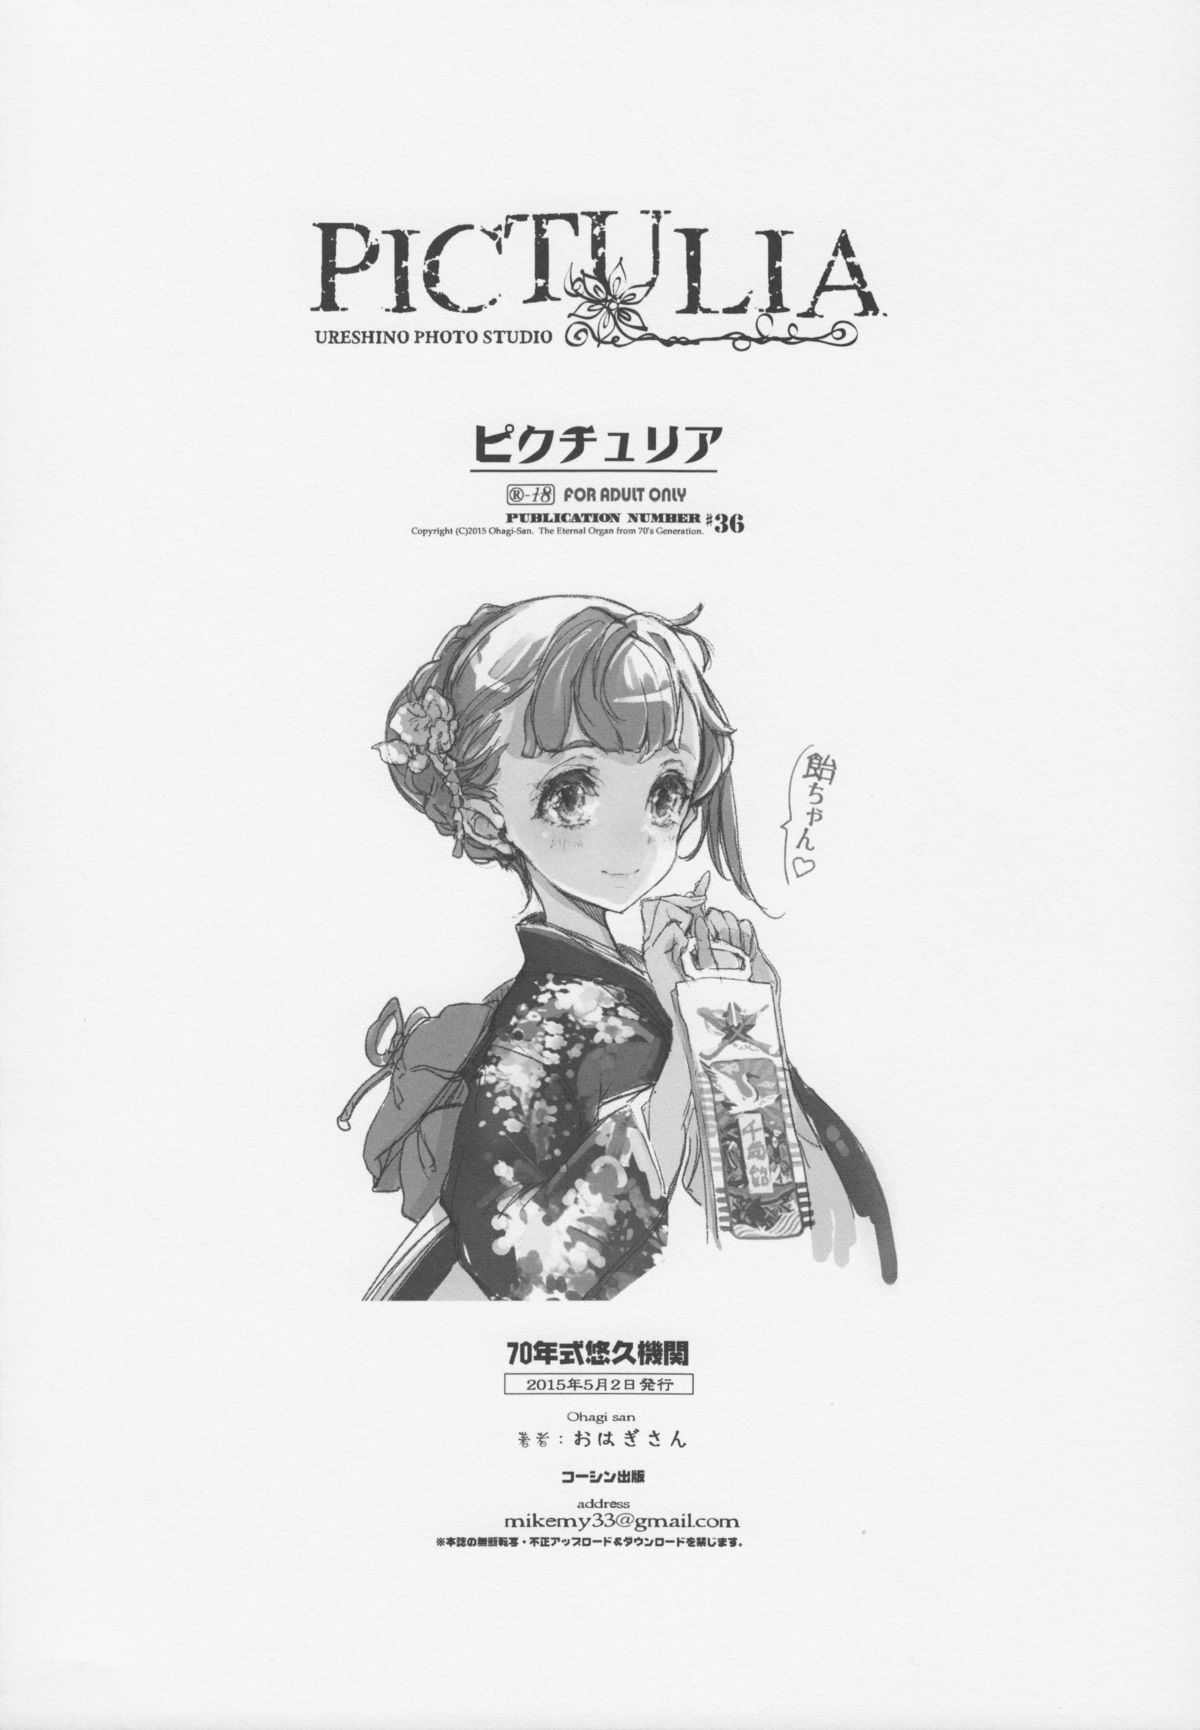 (COMIC1☆9) [70年式悠久機関 (おはぎさん)] pictulia + 4Pリーフレット